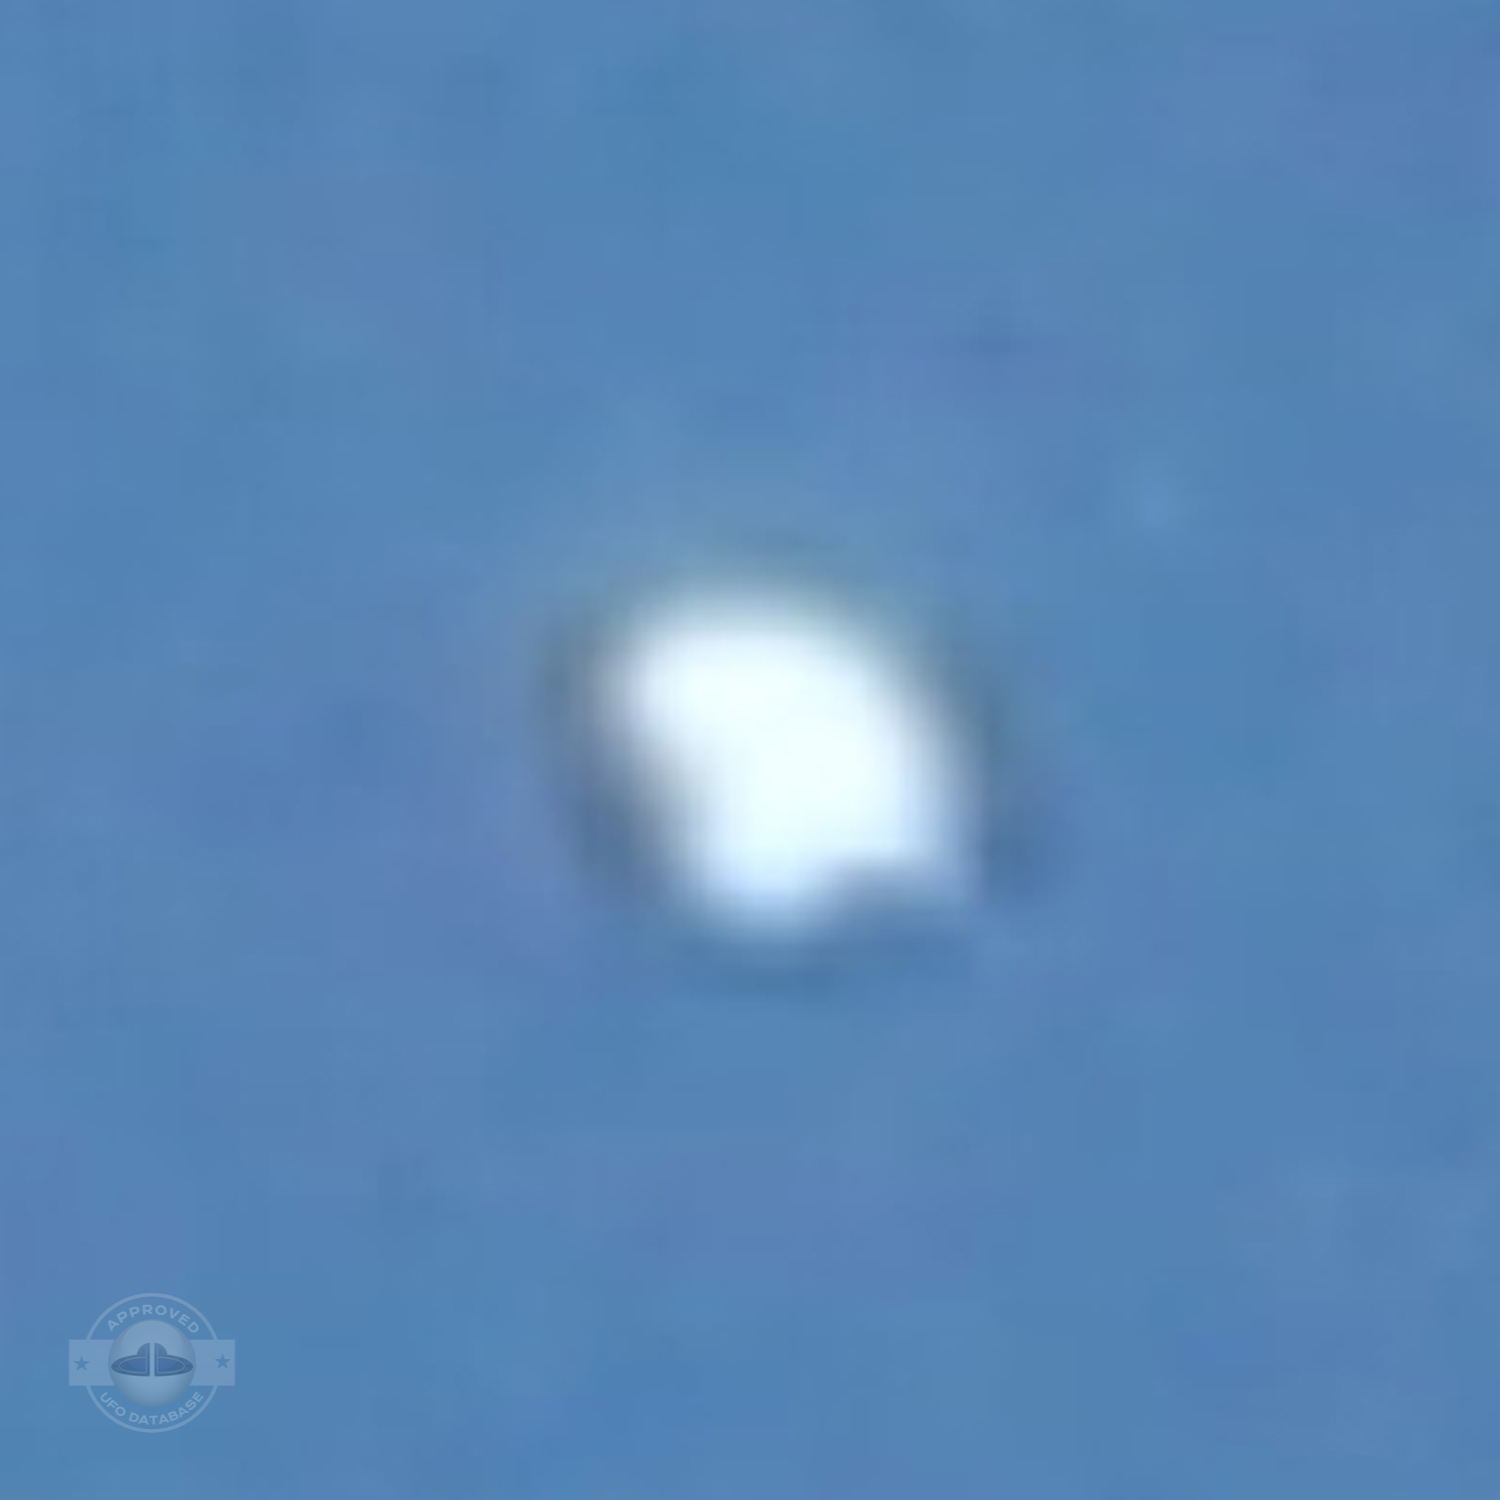 Extremely Shinning UFO probe over Yavatmal | Maharashtra, India 2009 UFO Picture #212-3